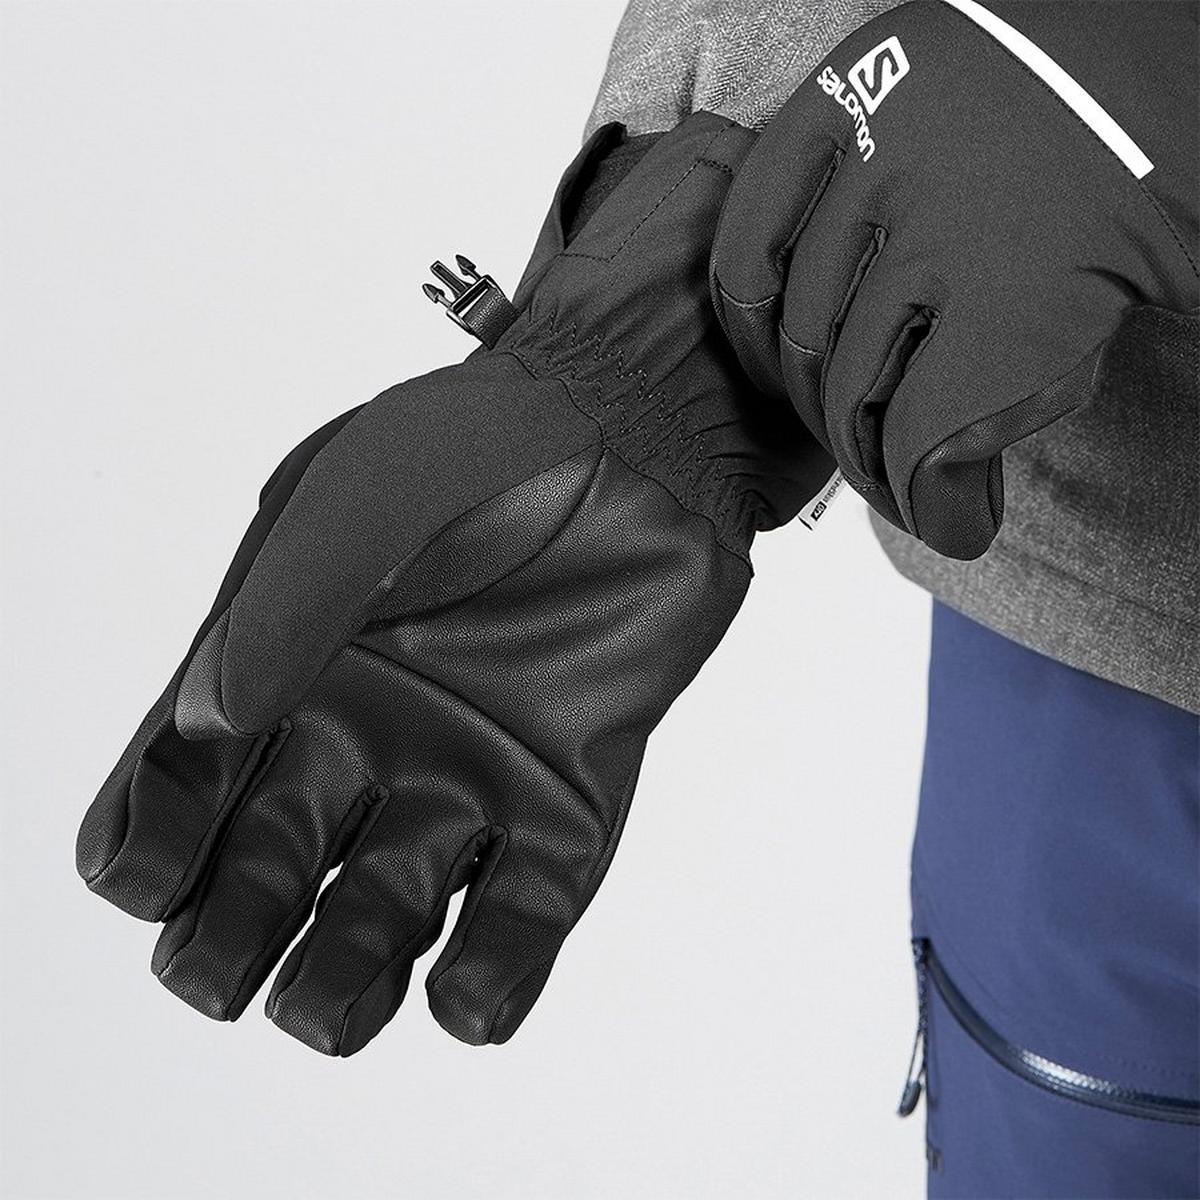 Salomon SKI Gloves Men's Propeller One Black/Black